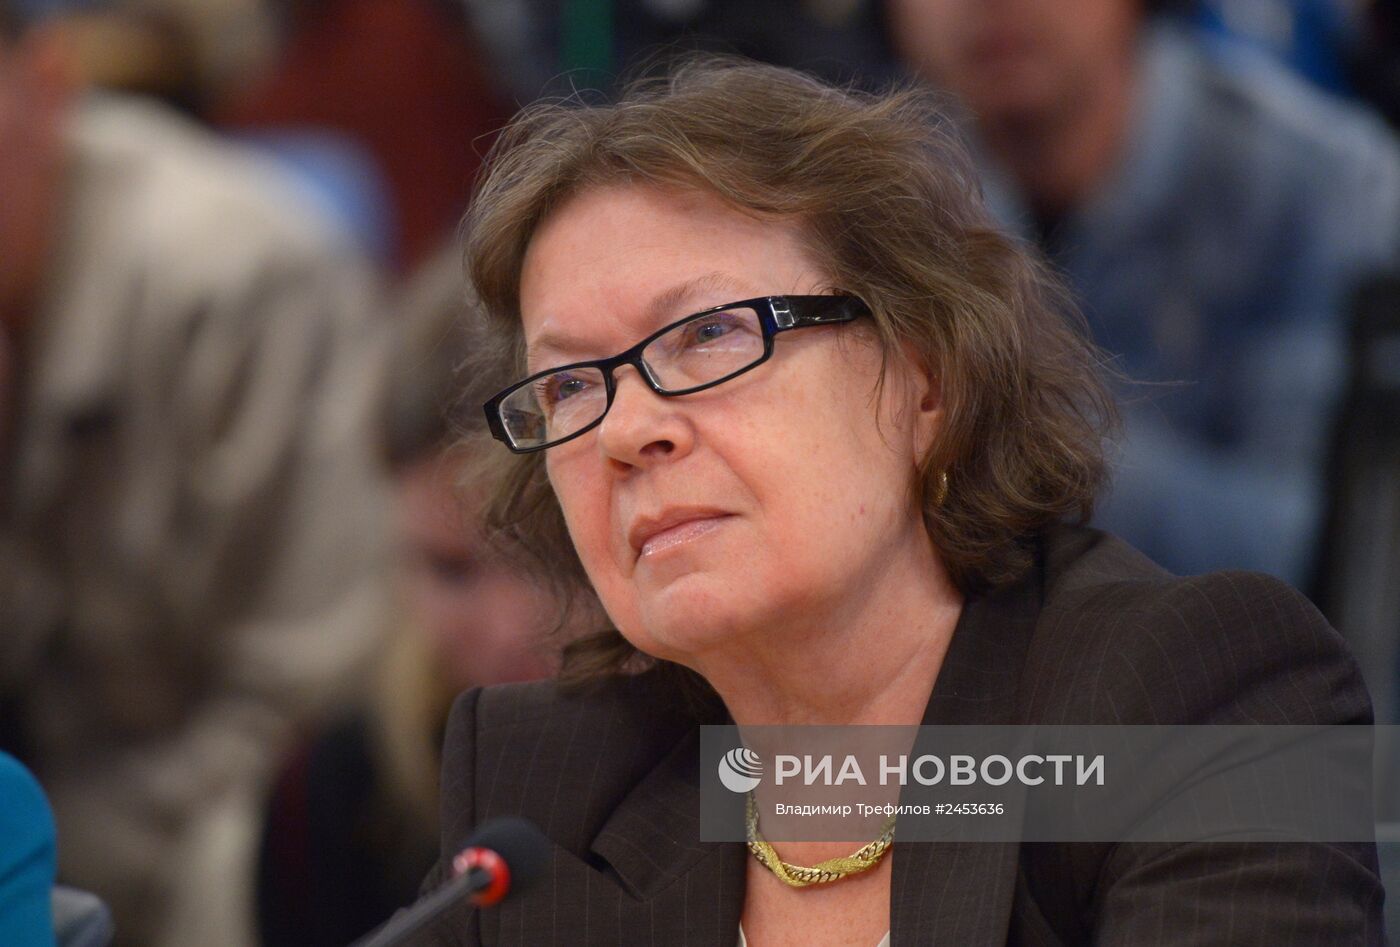 Круглый стол на тему: "Программы первоочередных действий правительств Донецкой и Луганской народных республик"